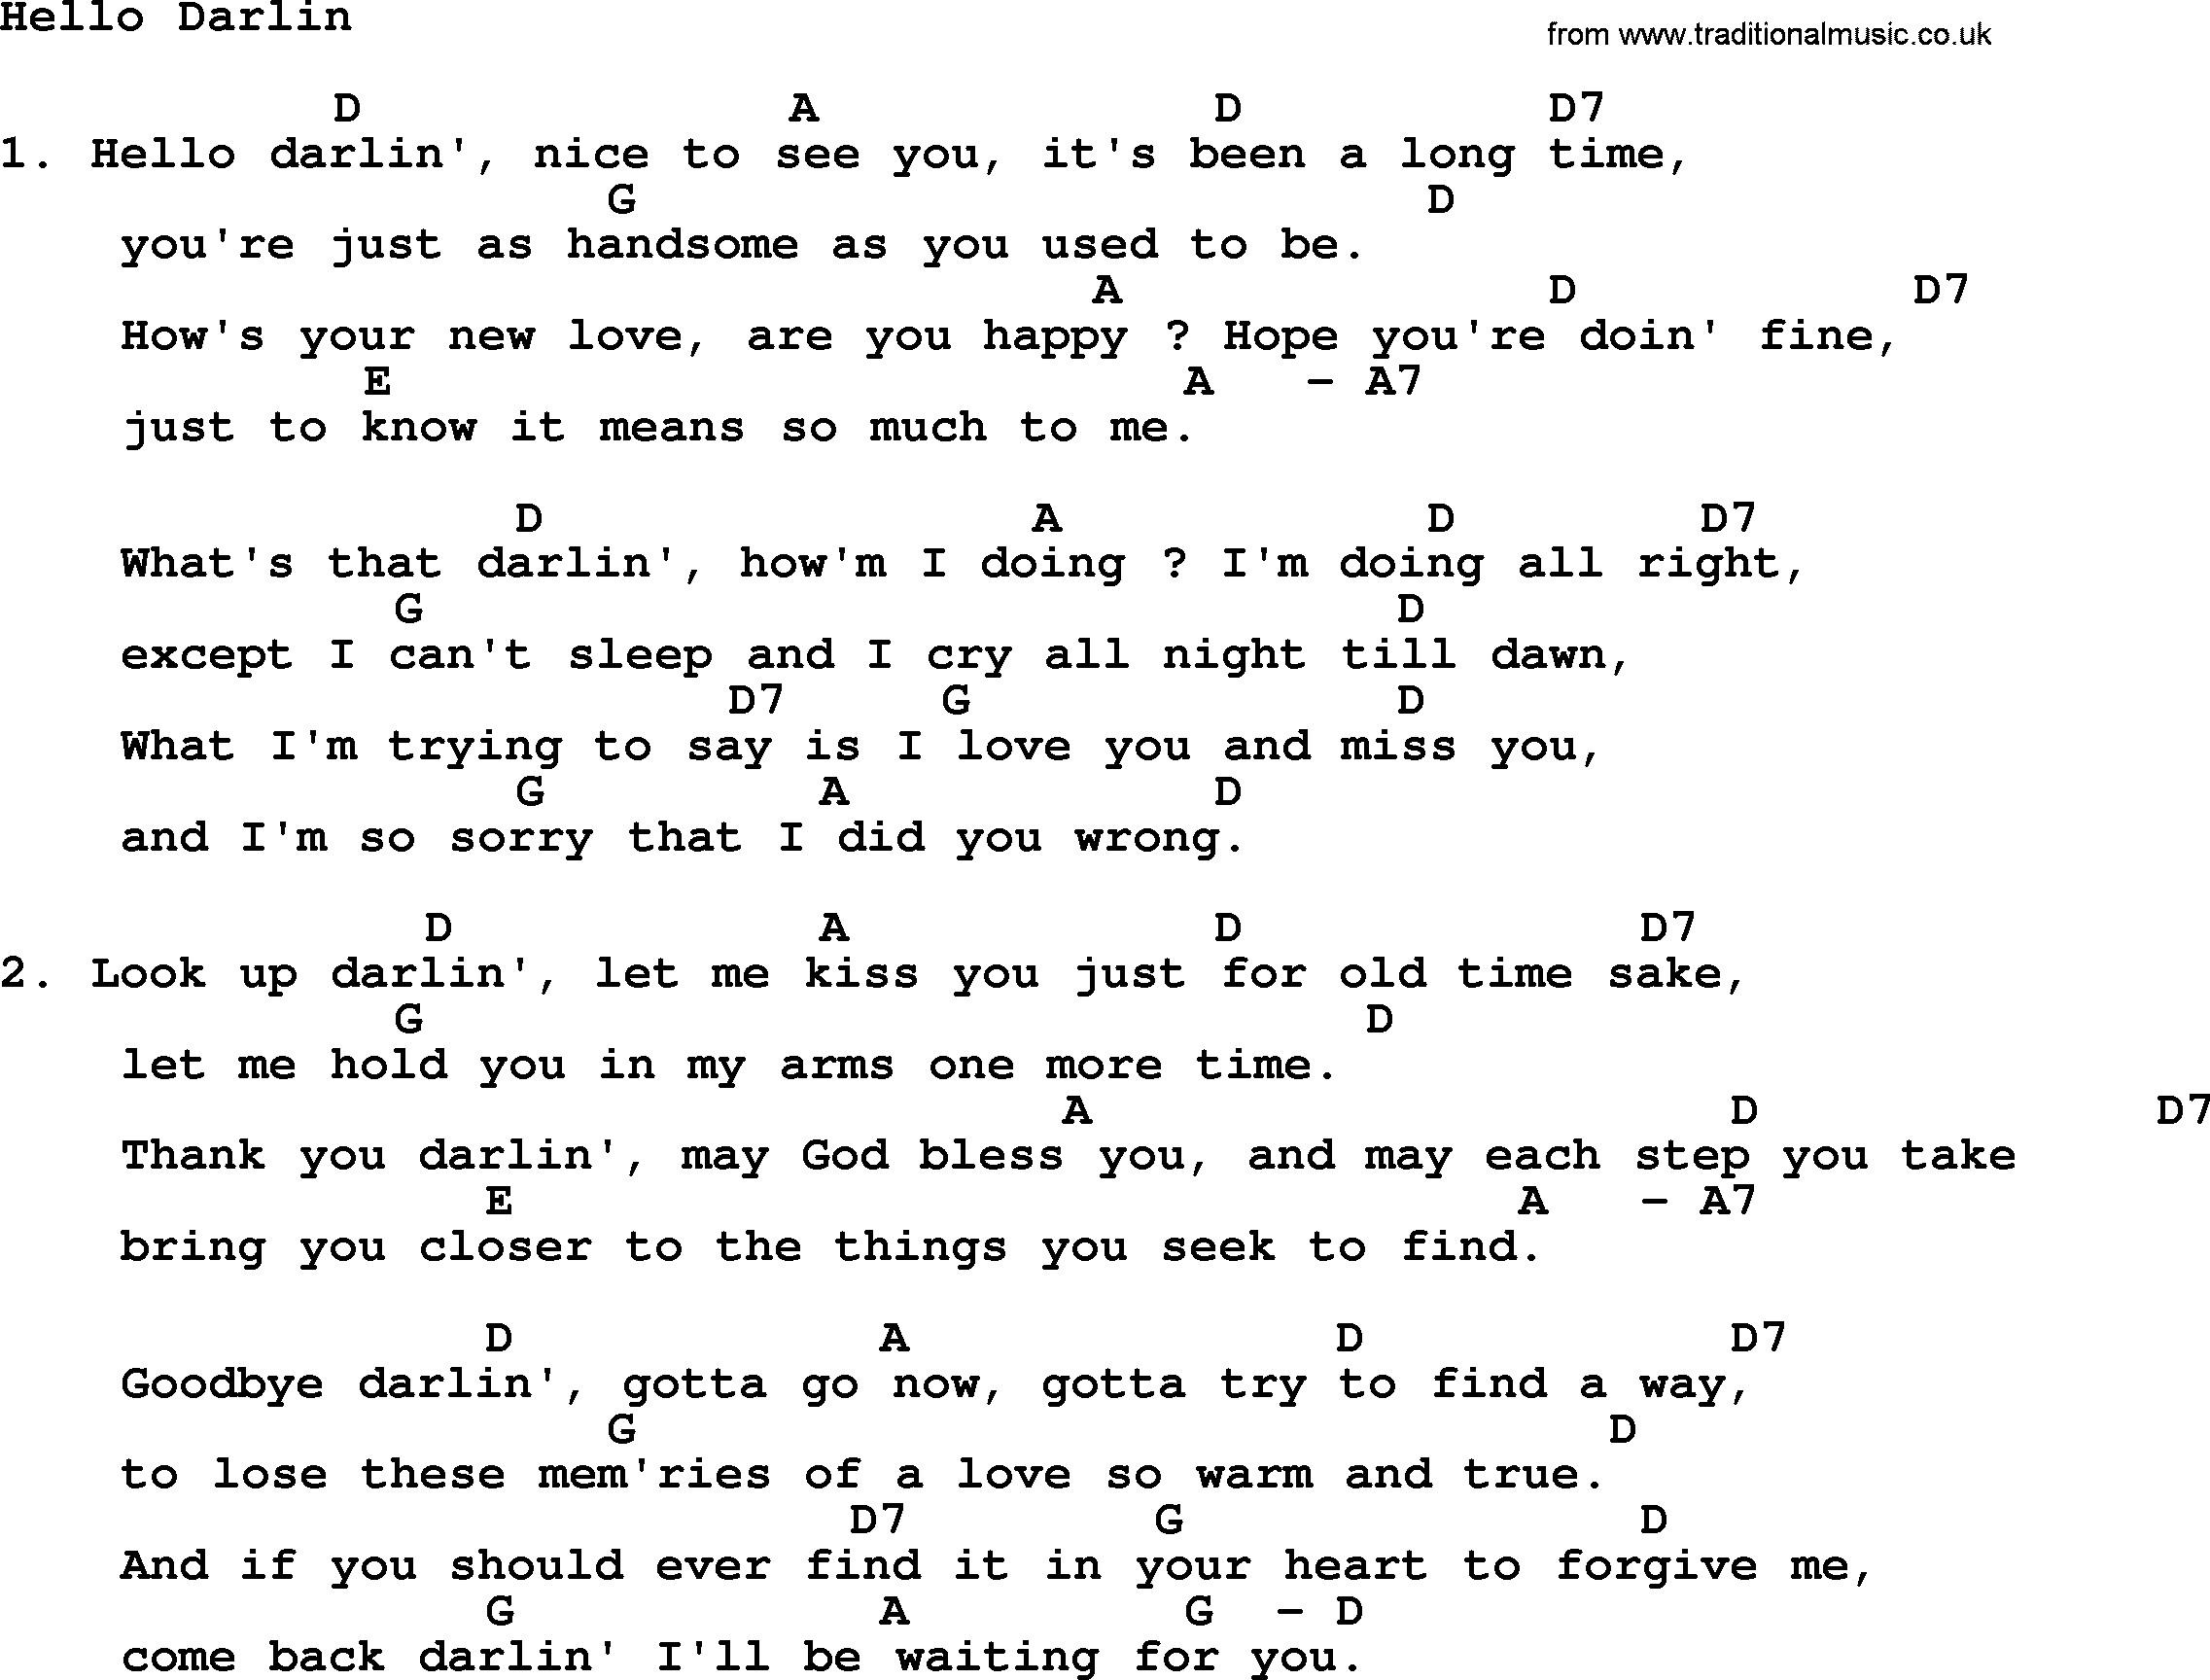 Loretta Lynn song: Hello Darlin' lyrics and chords